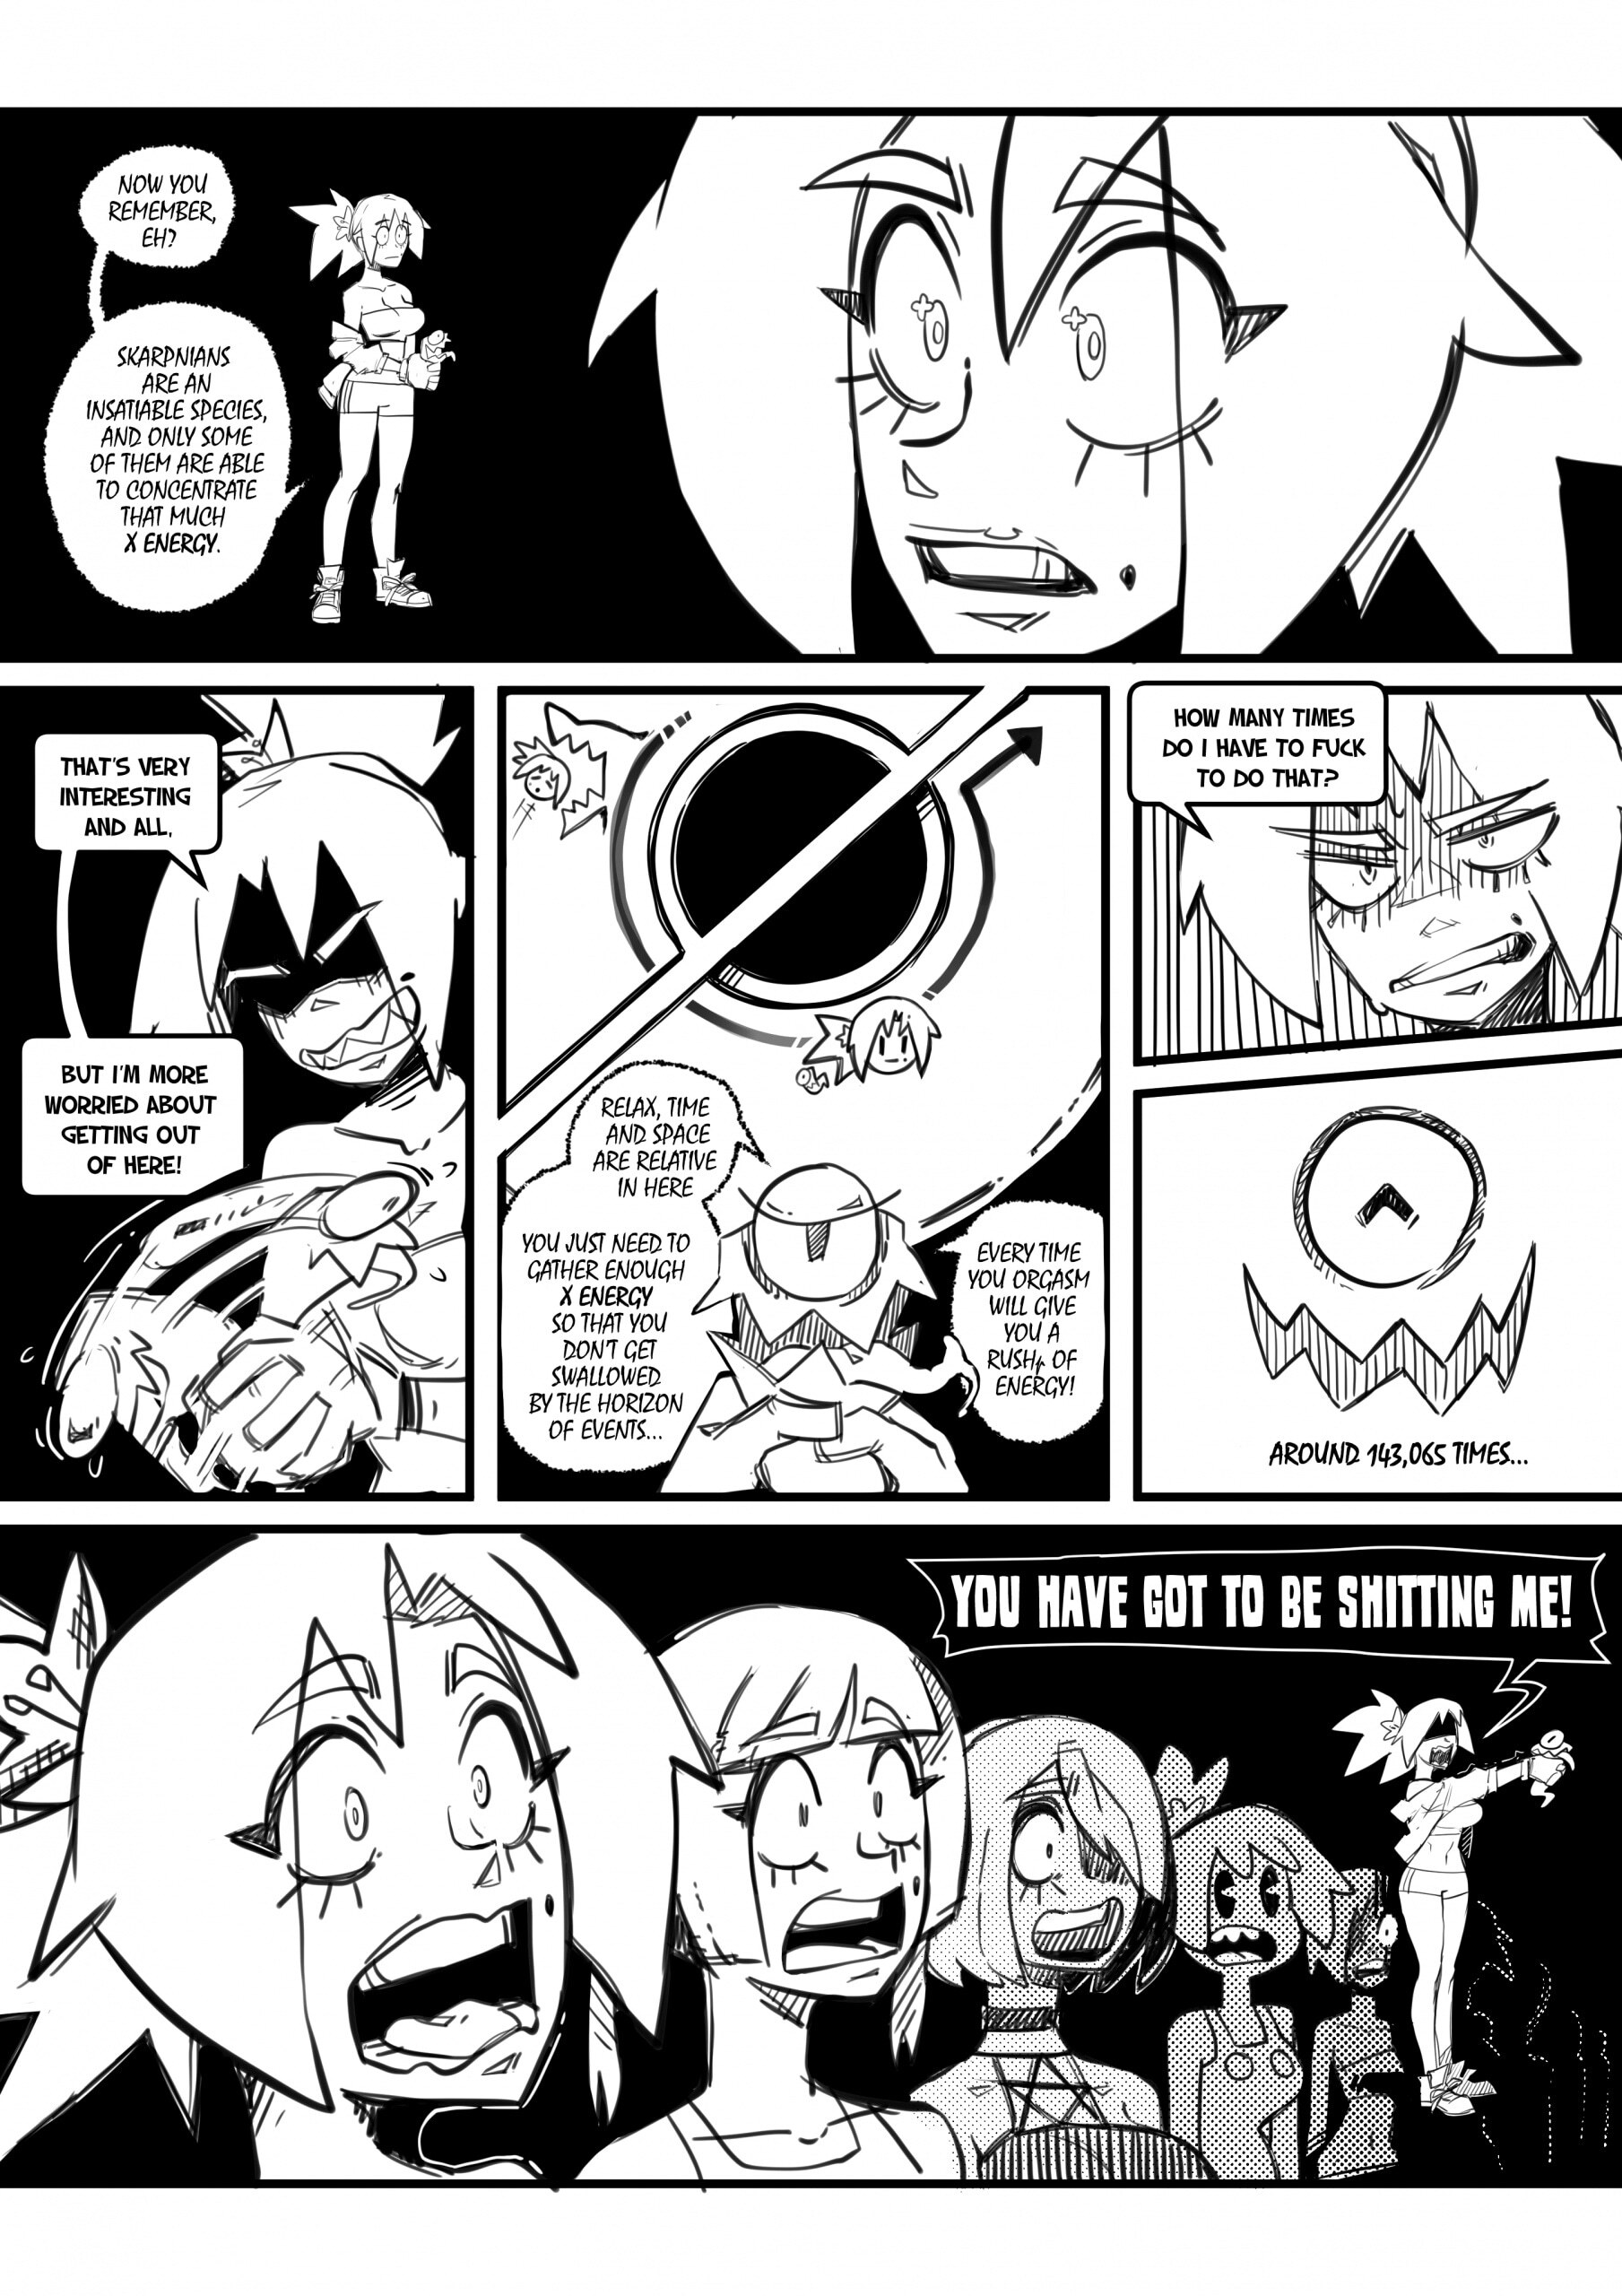 Skarpworld 10: Milk Crisis 4 - Gravity - Page 29